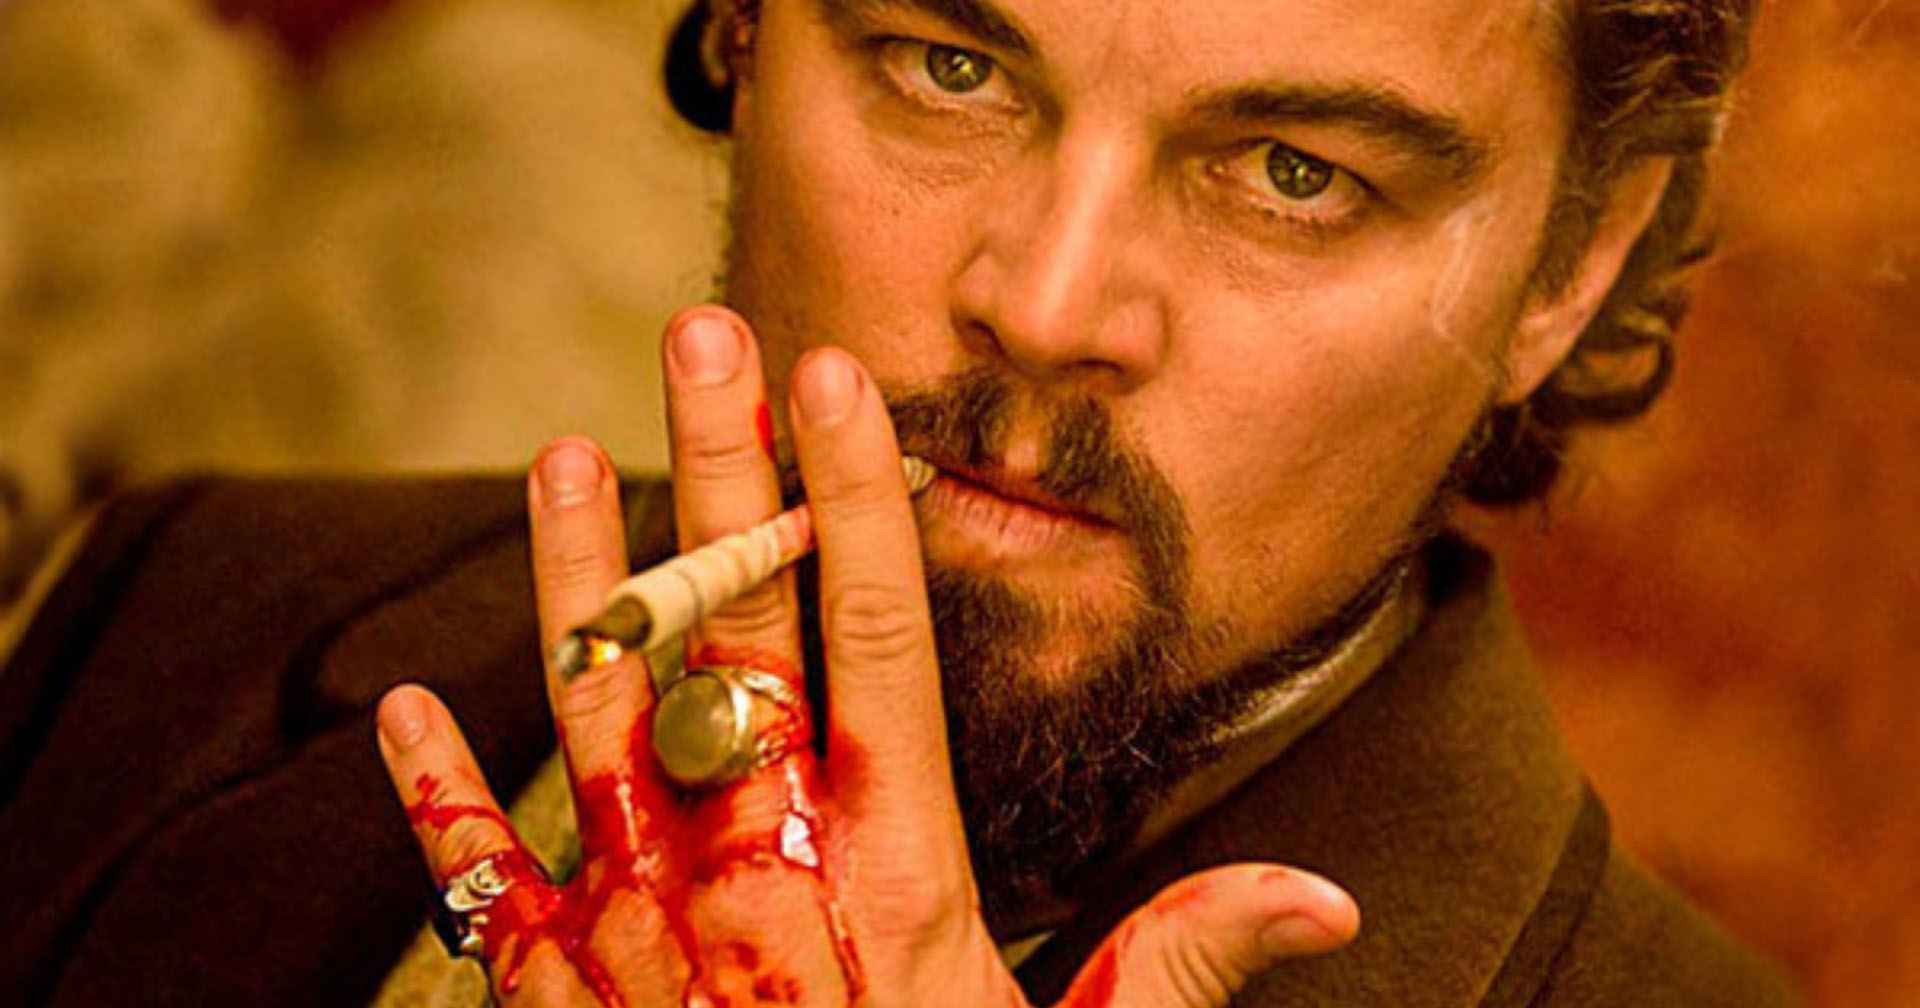 เกิดอุบัติเหตุใน Django Unchained แก้วบาดมือ Leonardo DiCaprio เลือดไหลโชกแต่ทนเจ็บถ่ายทำต่อ